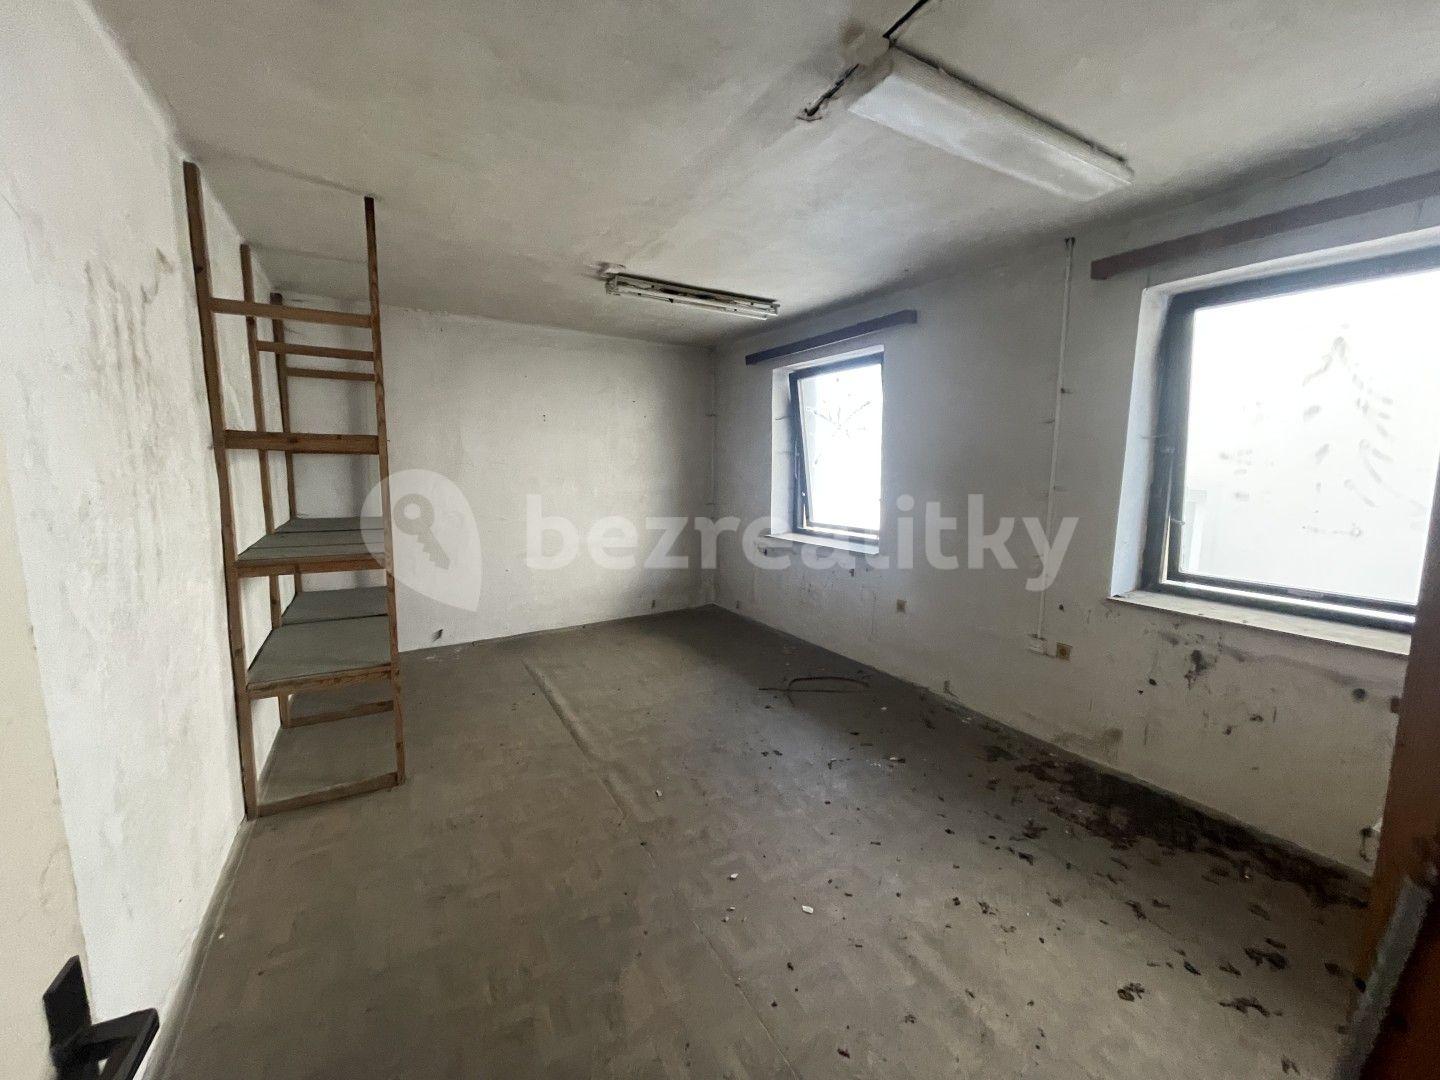 Prodej nebytového prostoru 962 m², Krkonošská, Tanvald, Liberecký kraj